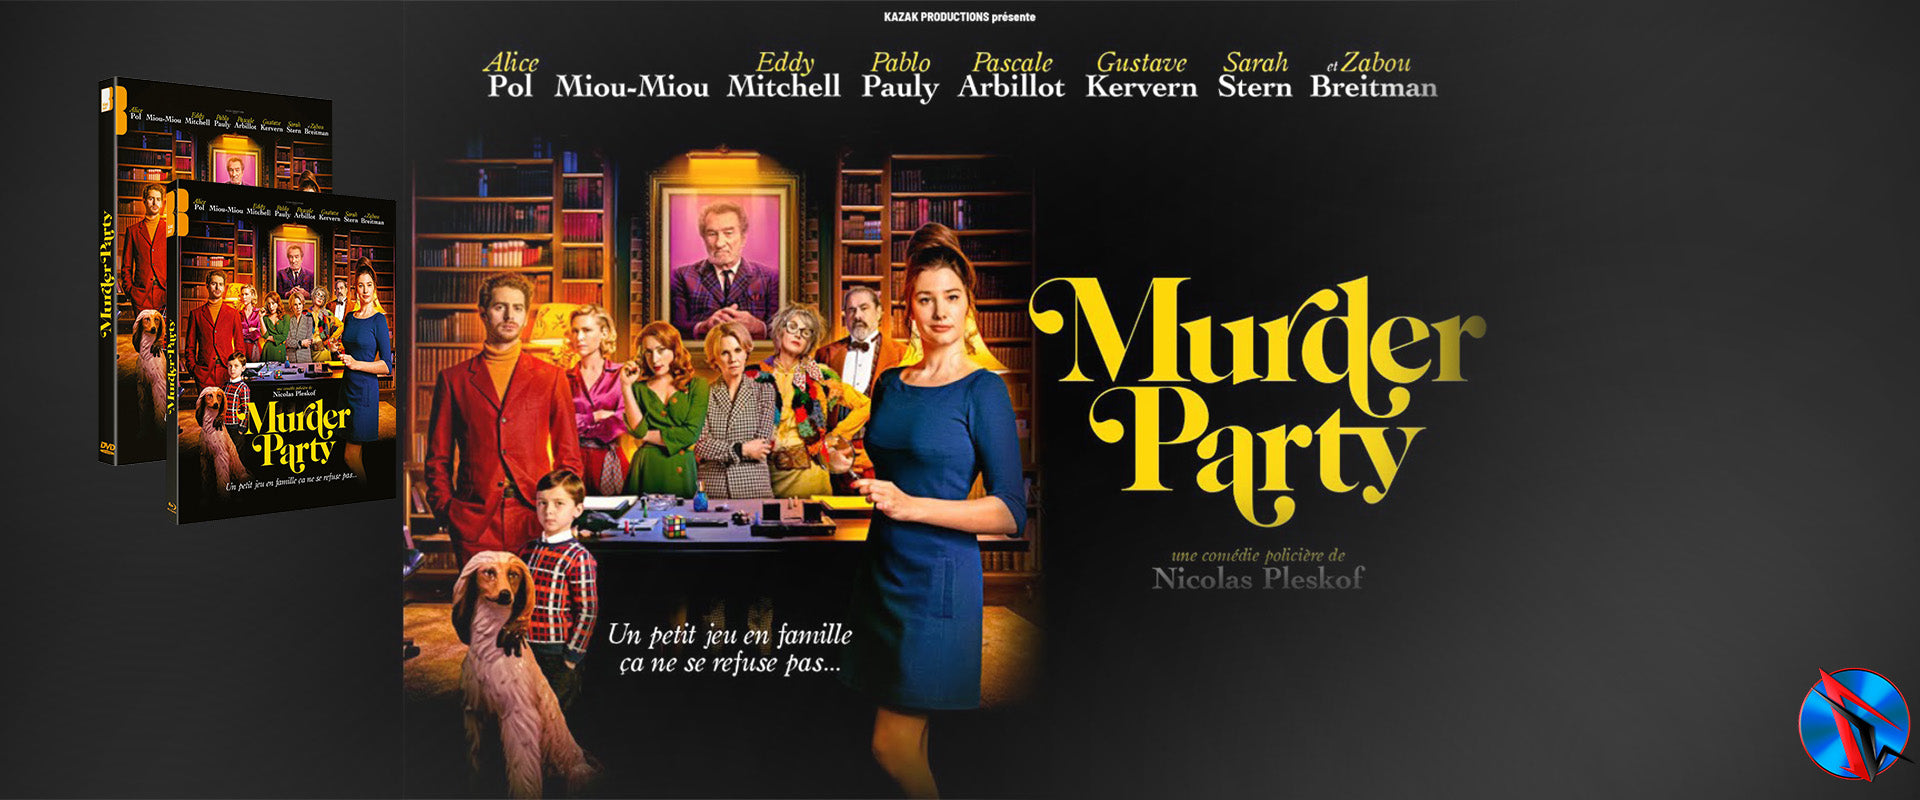 Murder party en DVD et Blu-Ray